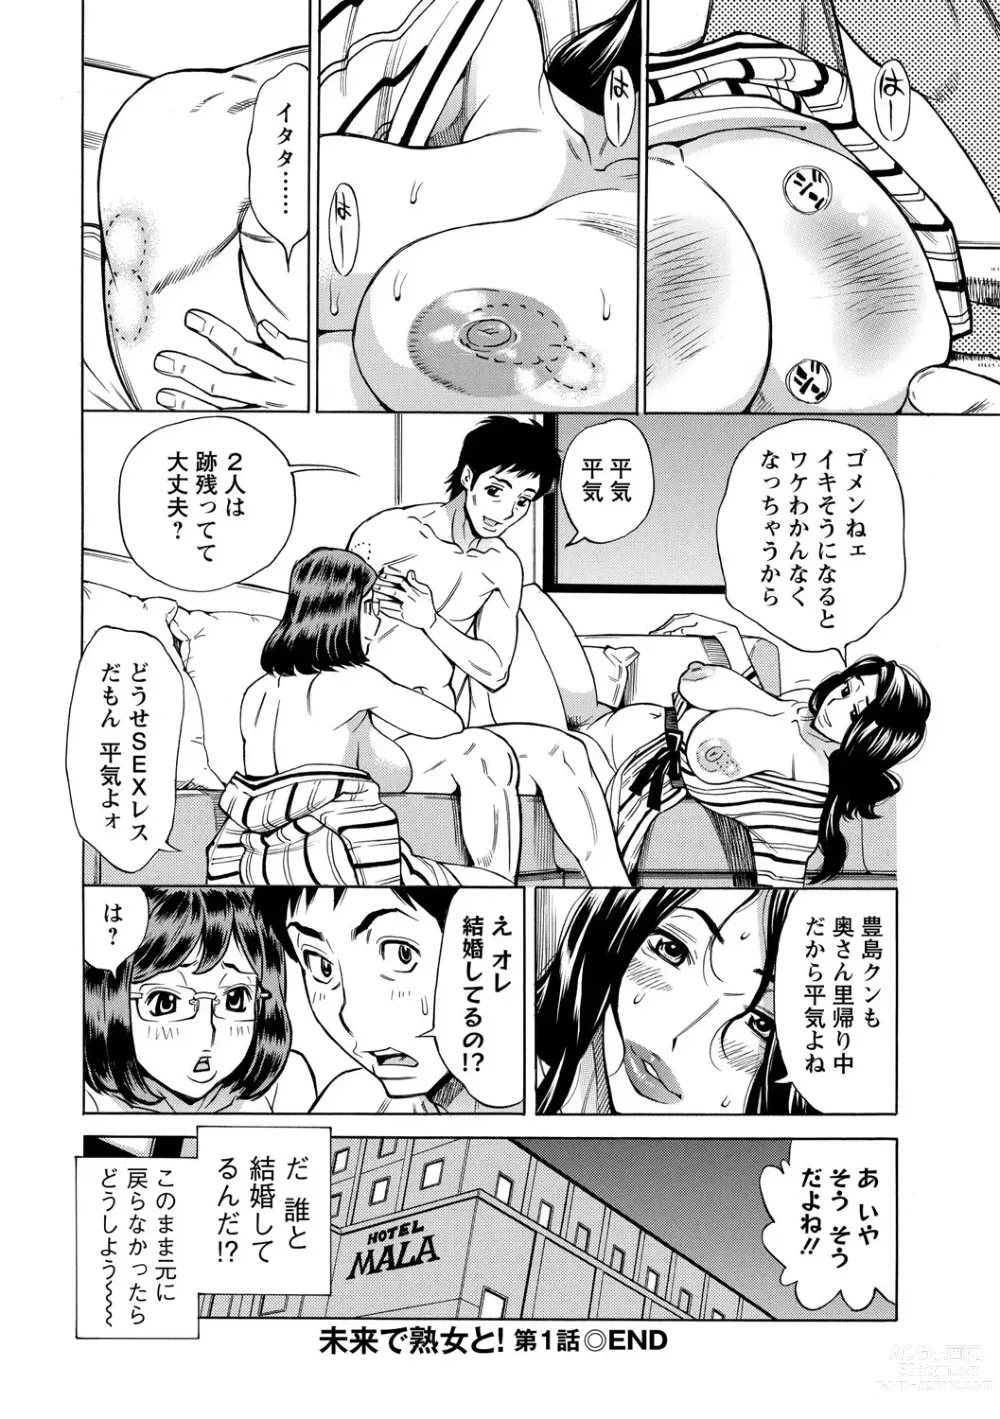 Page 22 of manga Inniku Jukujo no Namashibori.